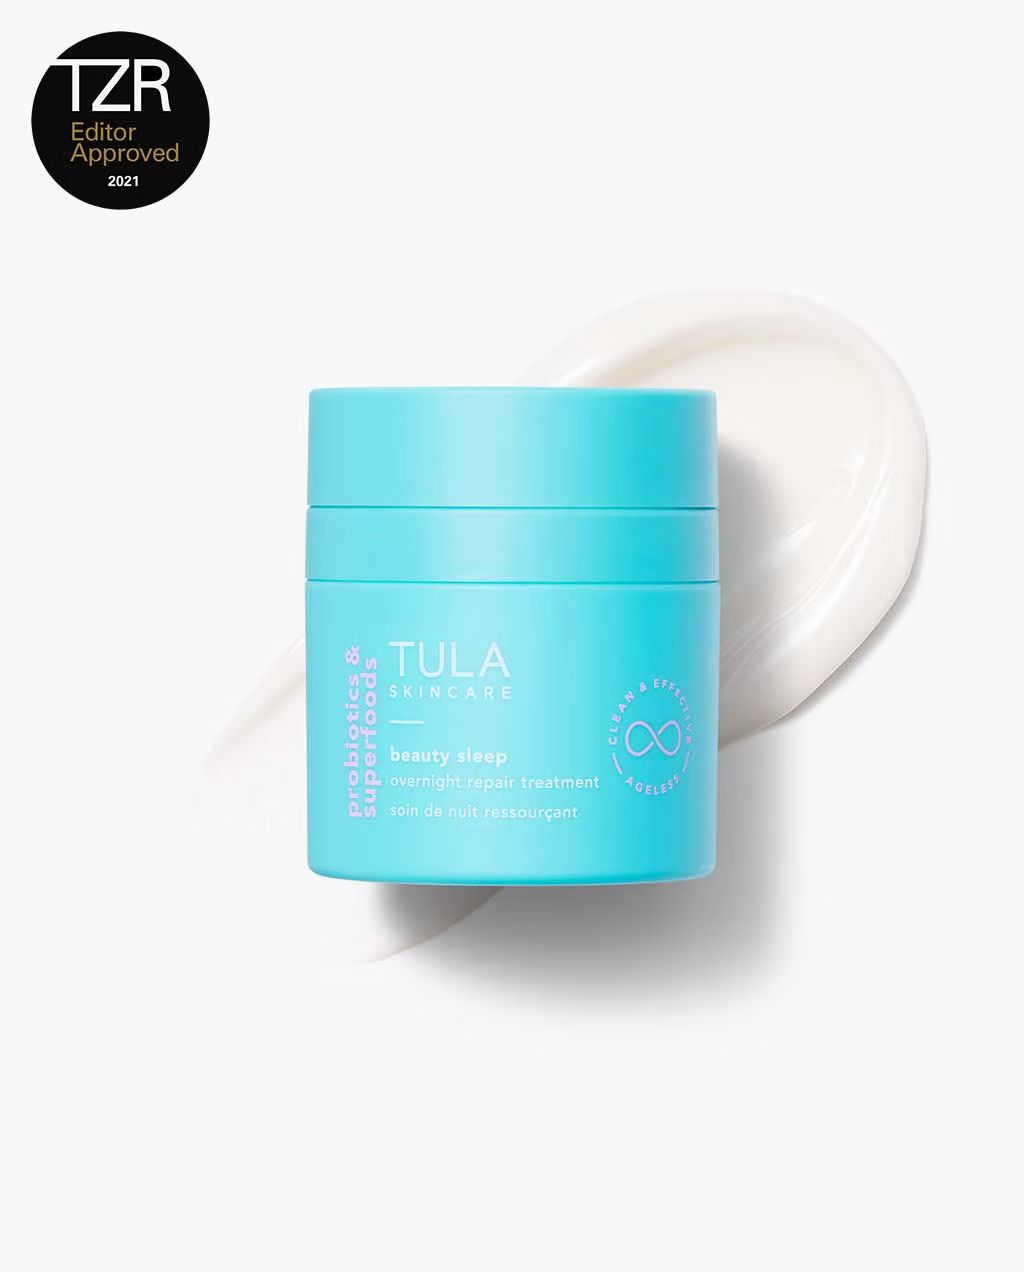 beauty sleep | Tula Skincare